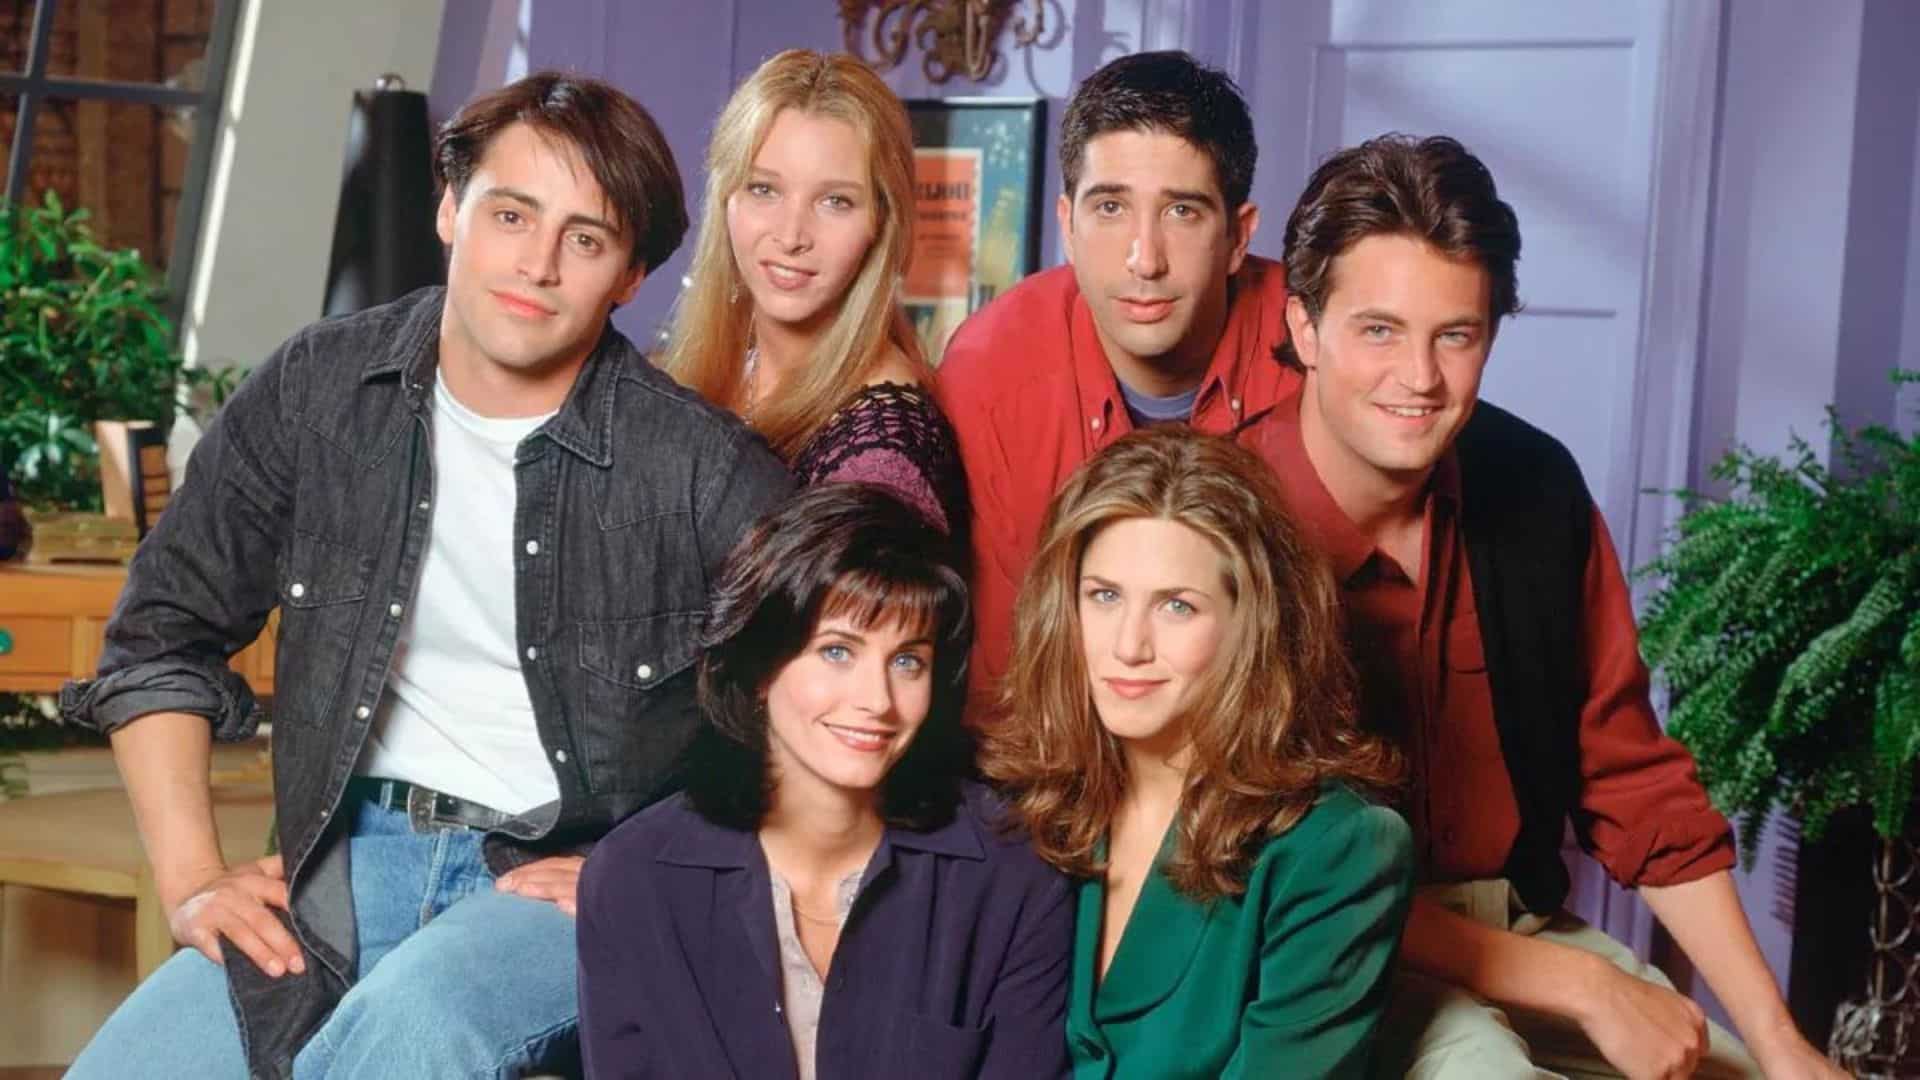 Obsèques de Matthew Perry : les 5 autres stars de Friends soudées dans la douleur